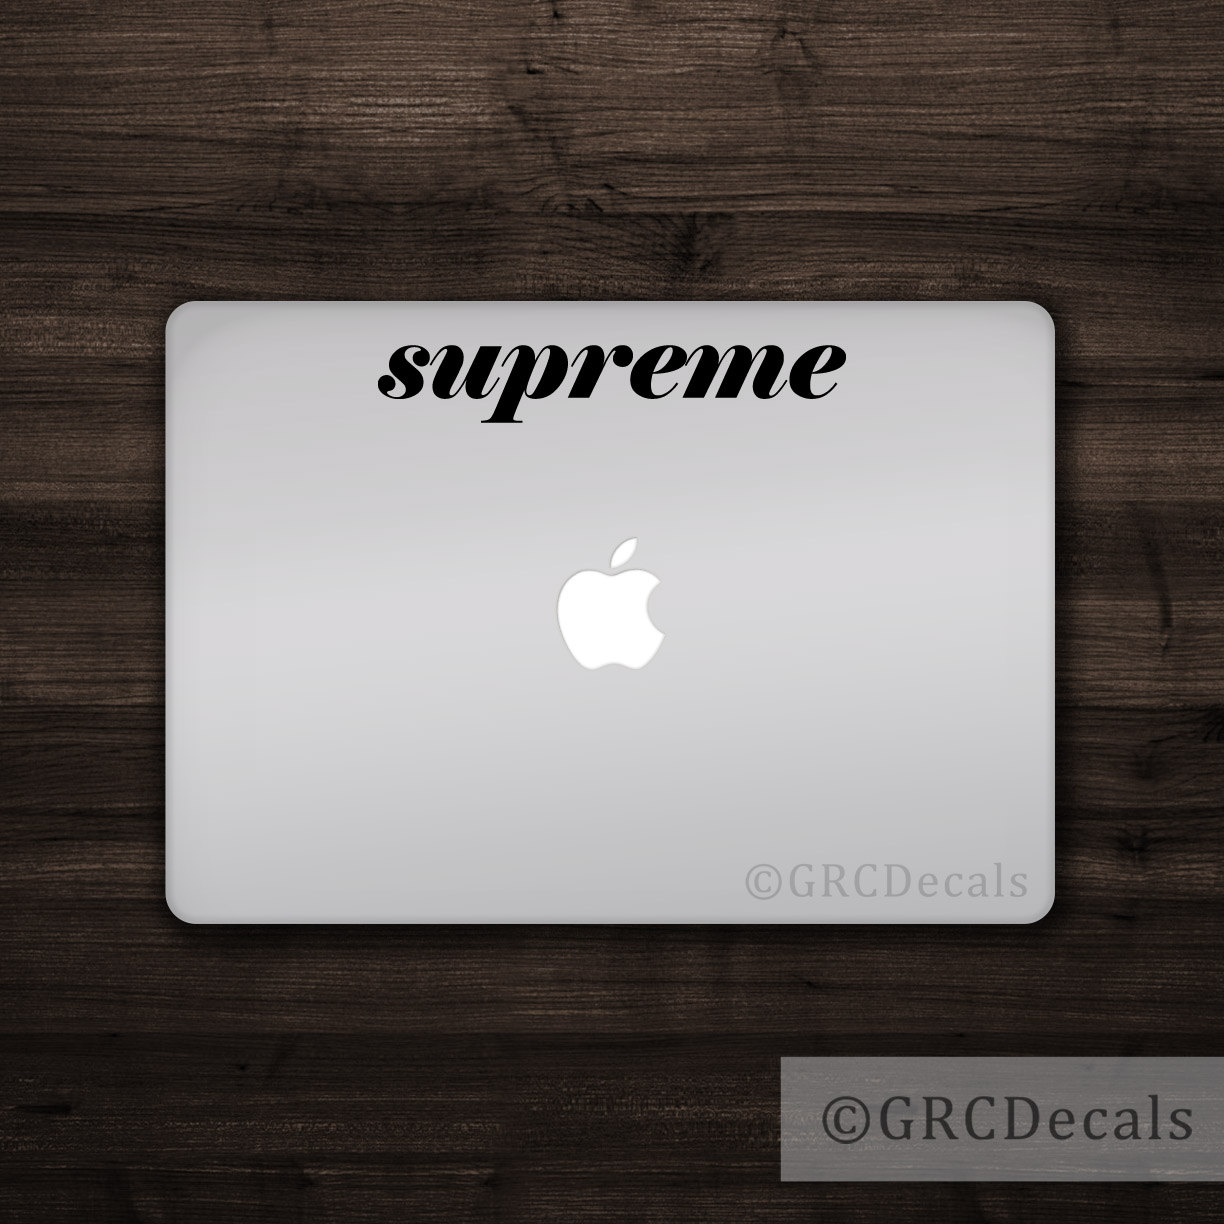 Supreme Laptop Skins for Sale